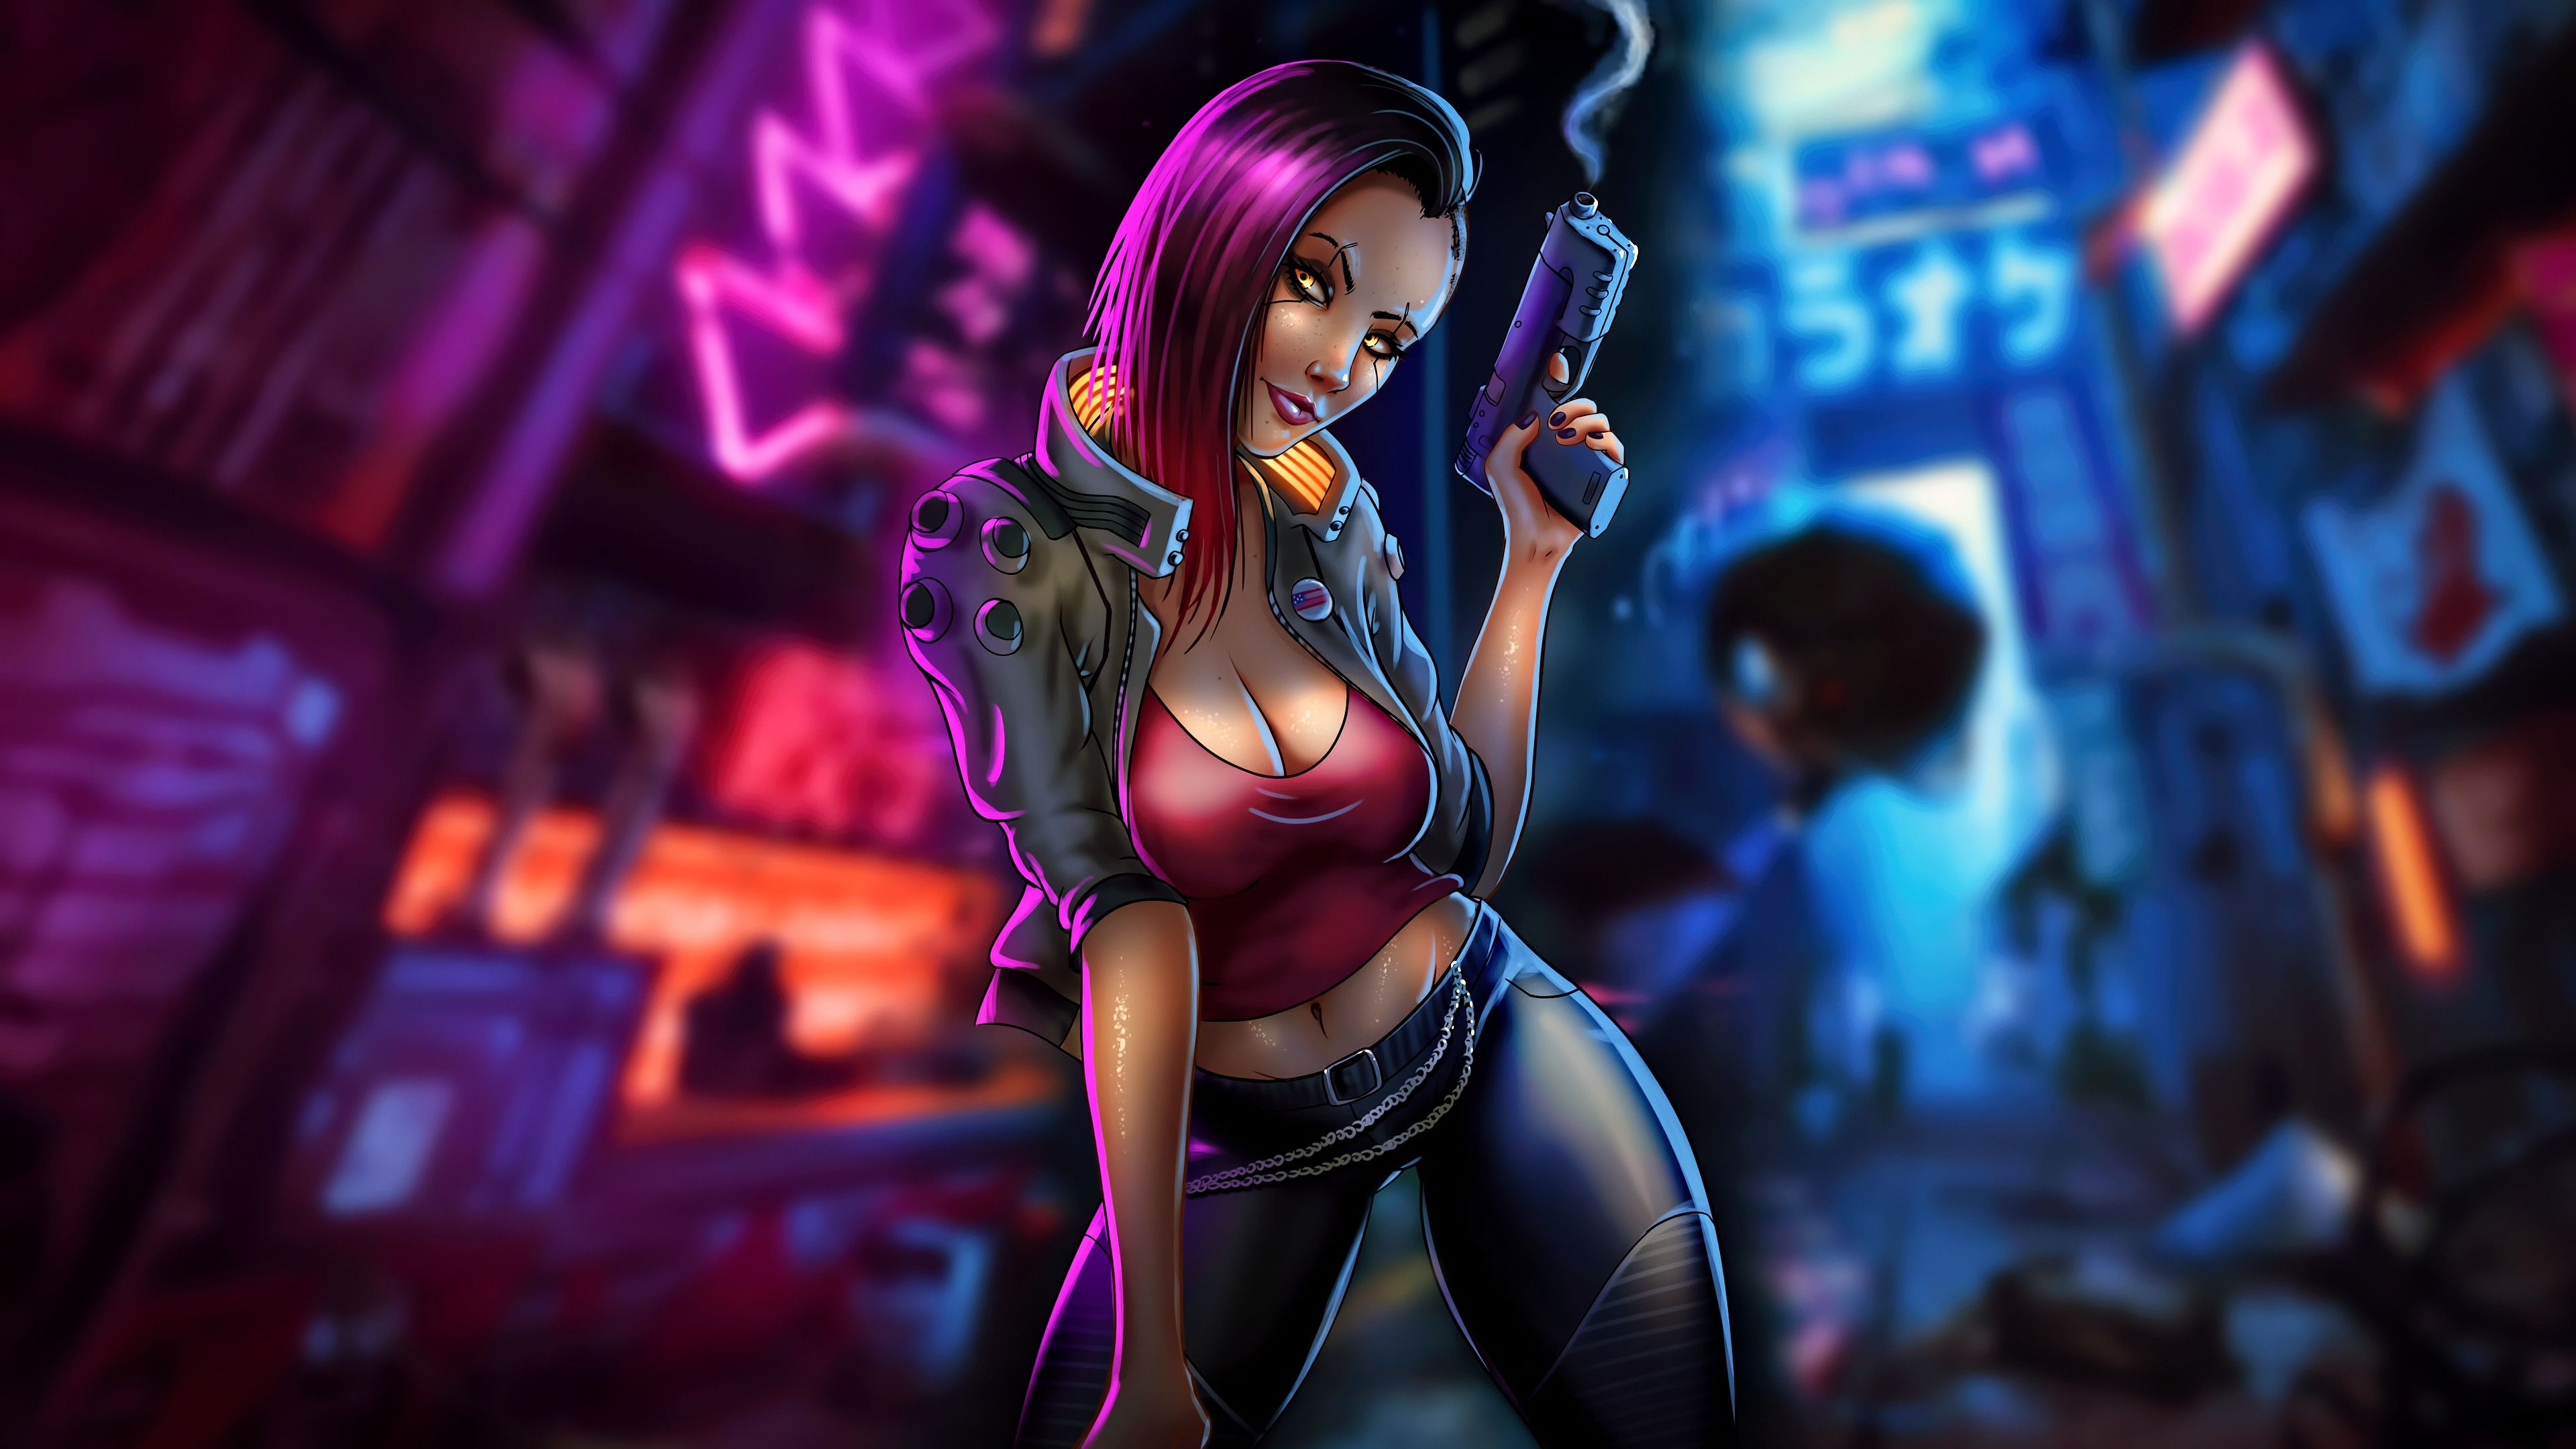 Cyberpunk girl video game art wallpaper background - Wallpapers